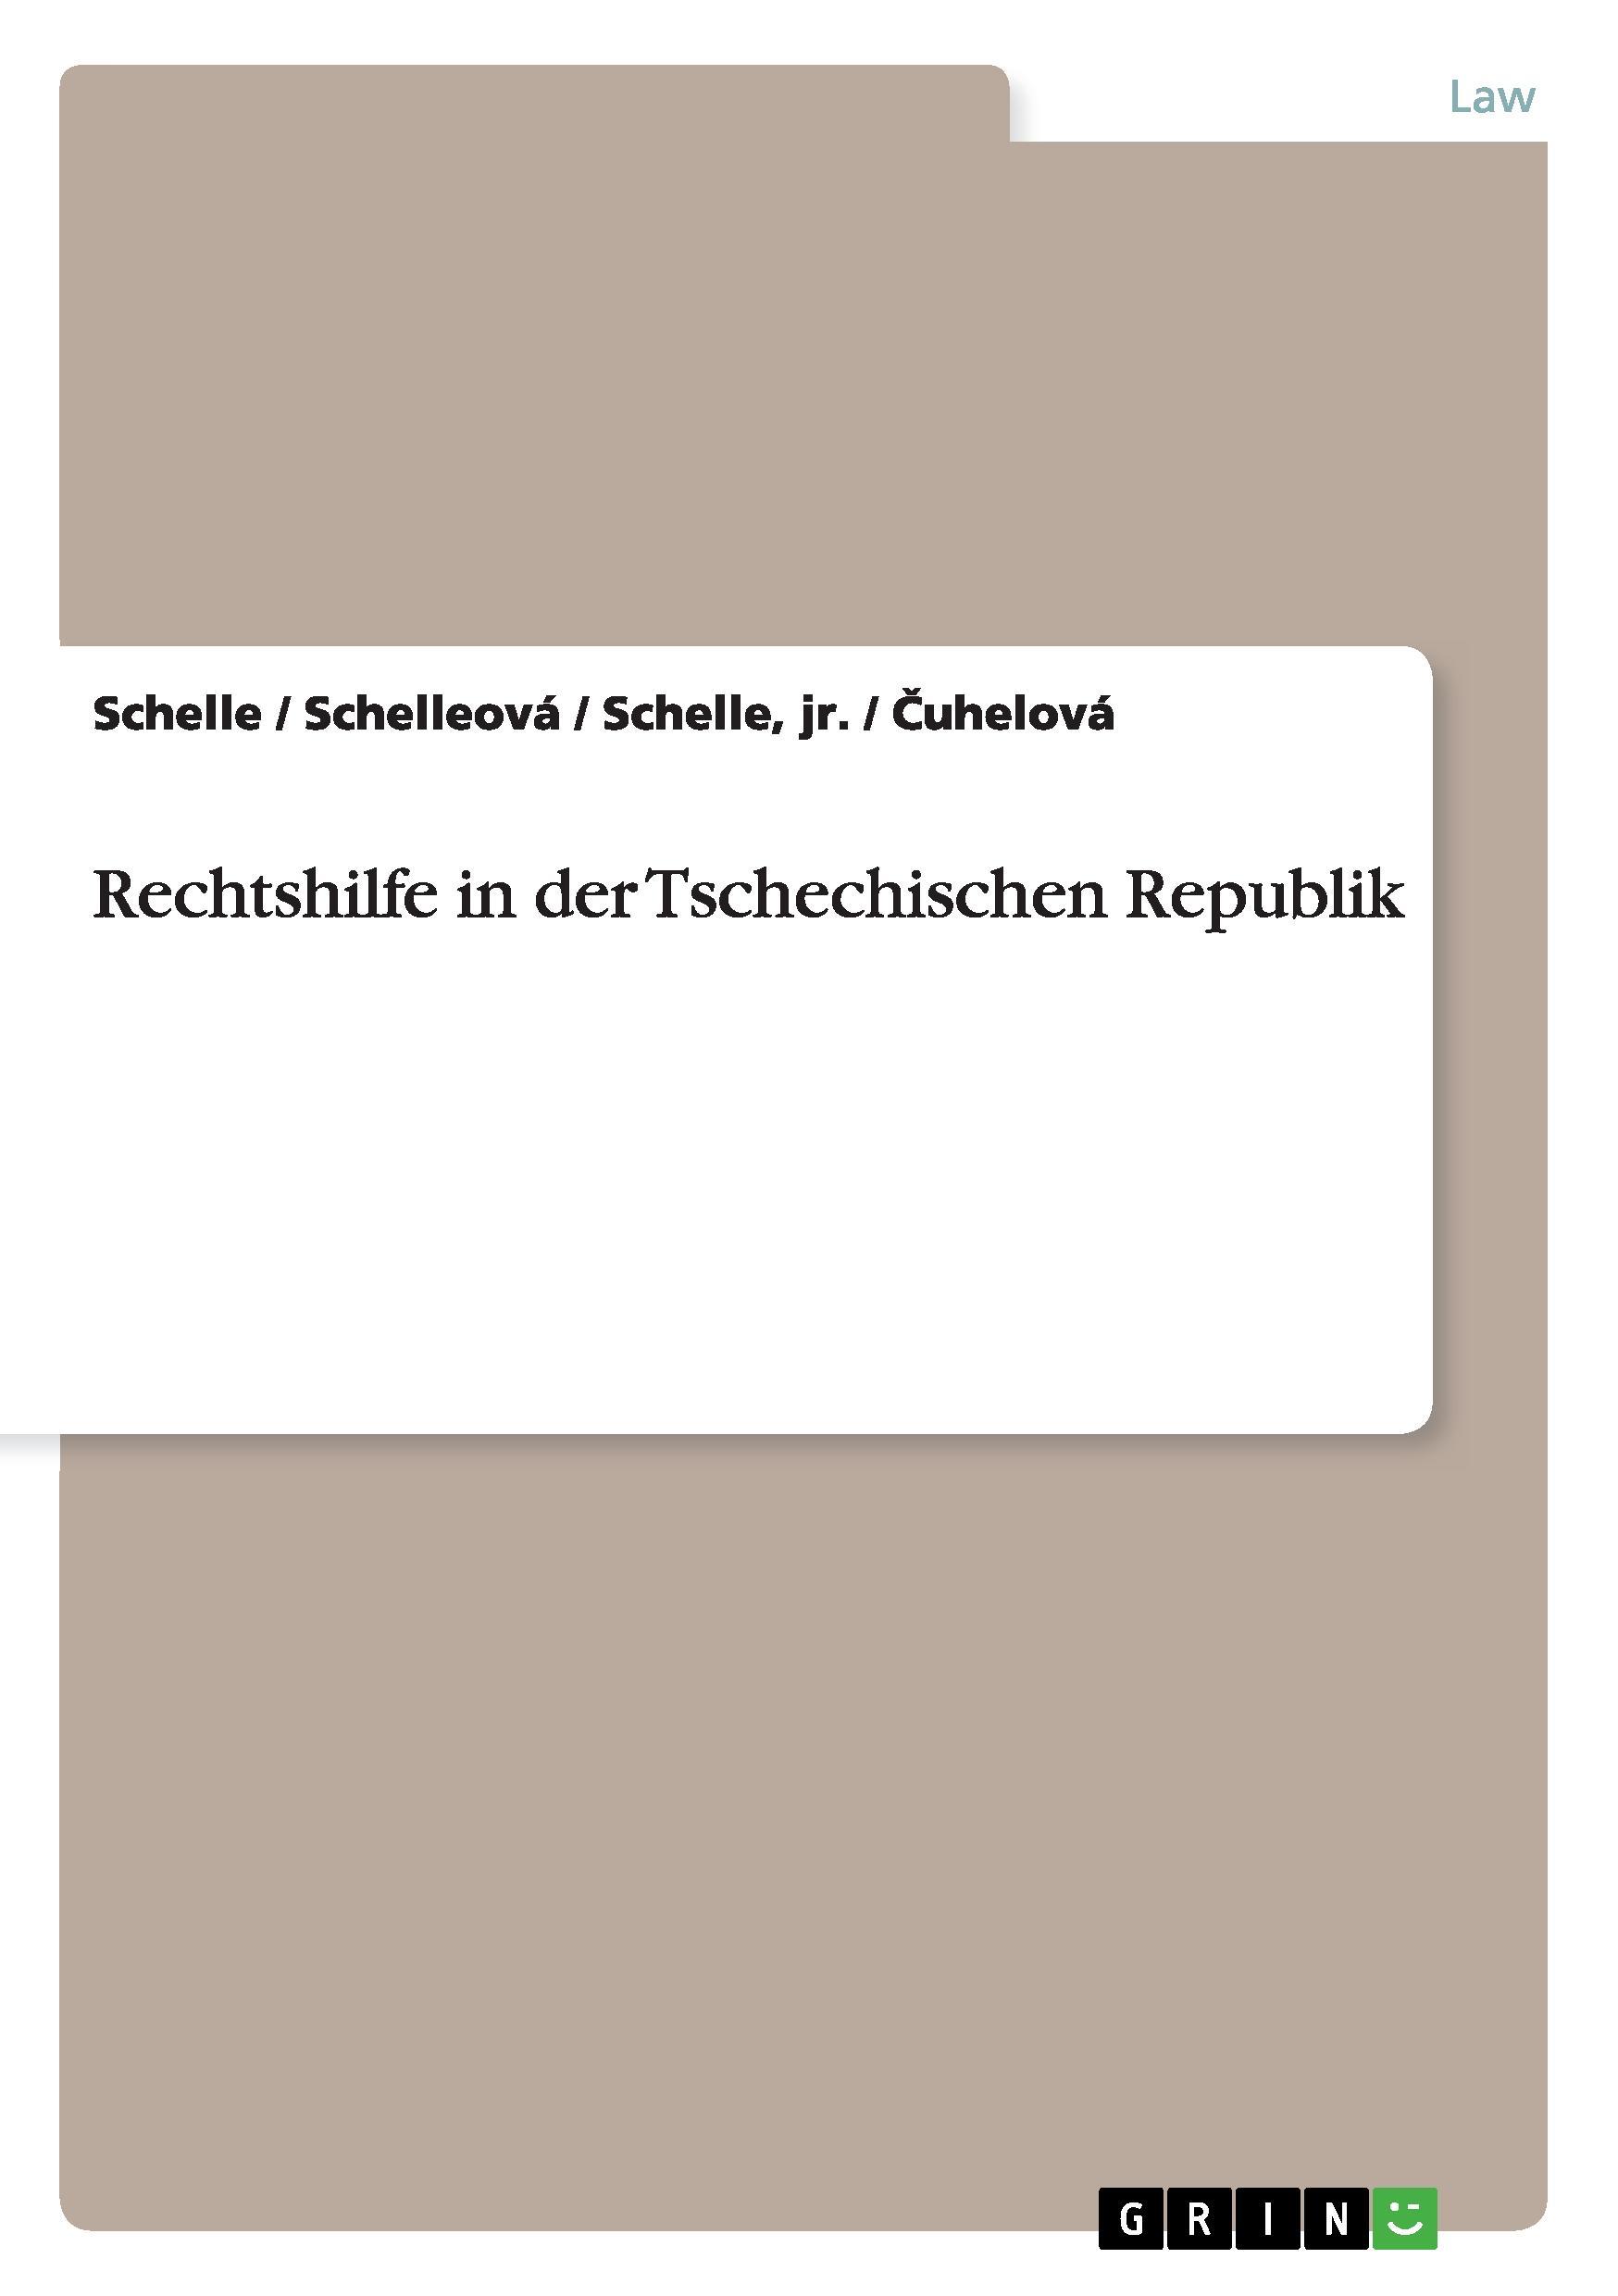 Rechtshilfe in der Tschechischen Republik - Schelle Schelle Schelleová Cuhelová